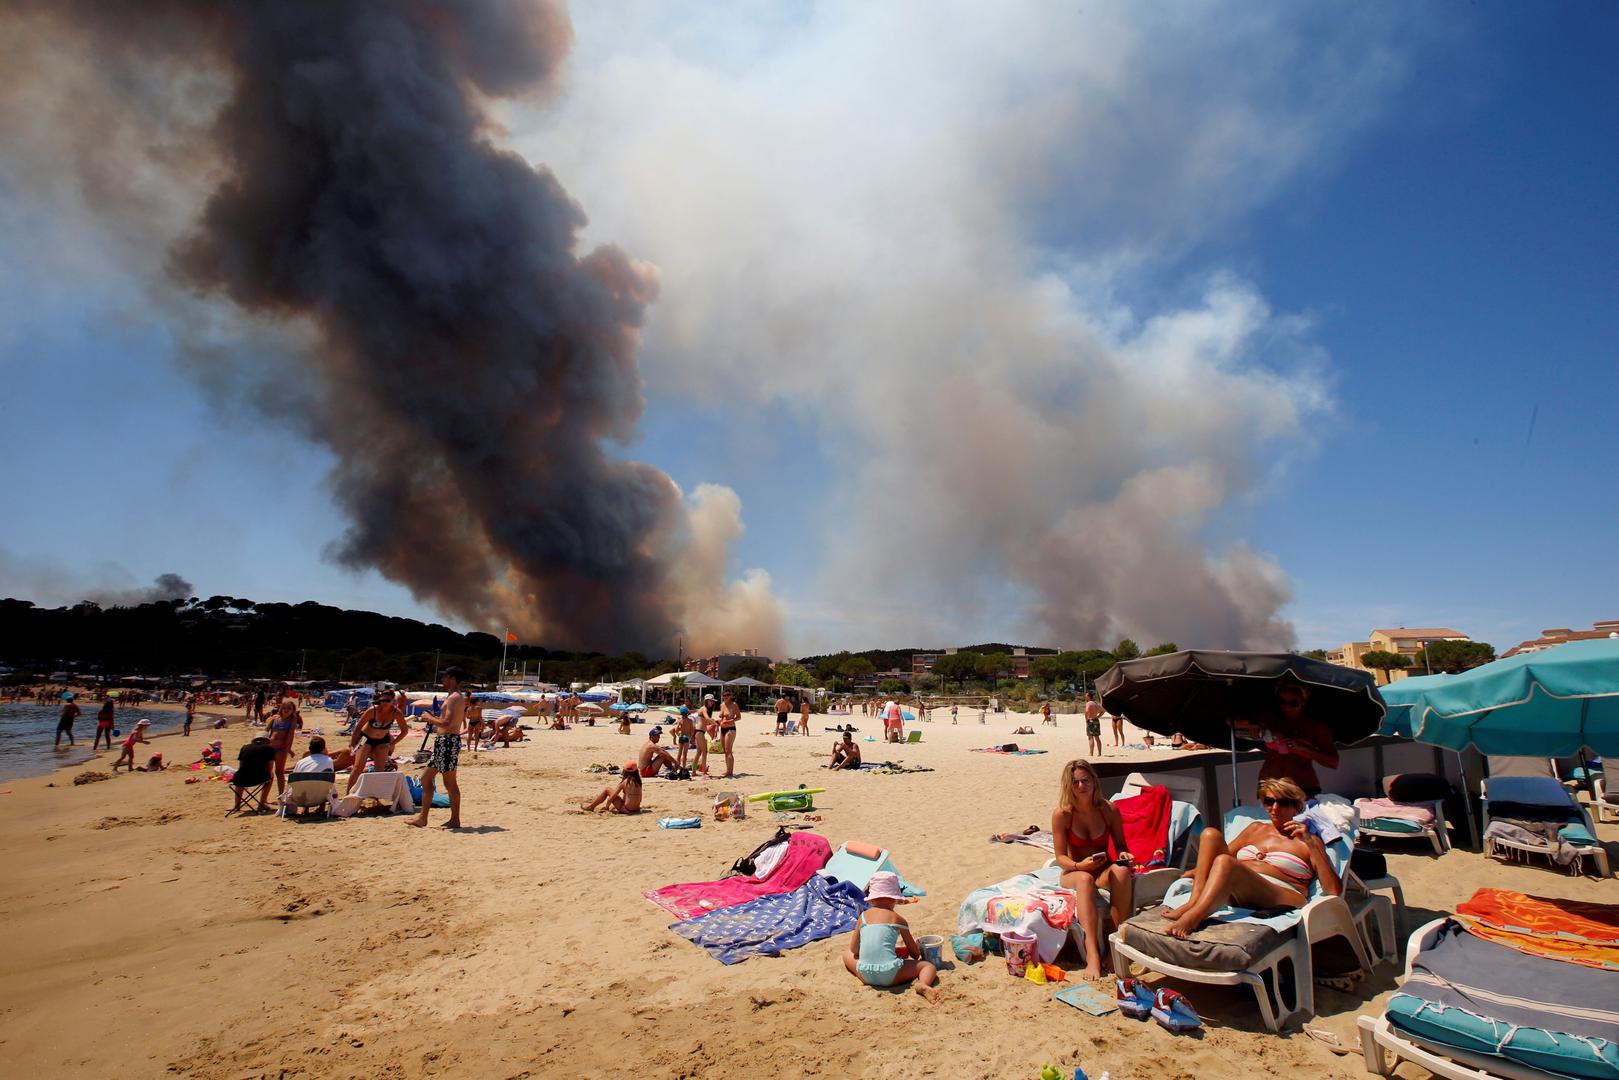 Dim se uzdiže prema nebu tijekom požara dok se turisti odmaraju na francuskoj plaži u Bormes-les-Mimosas.